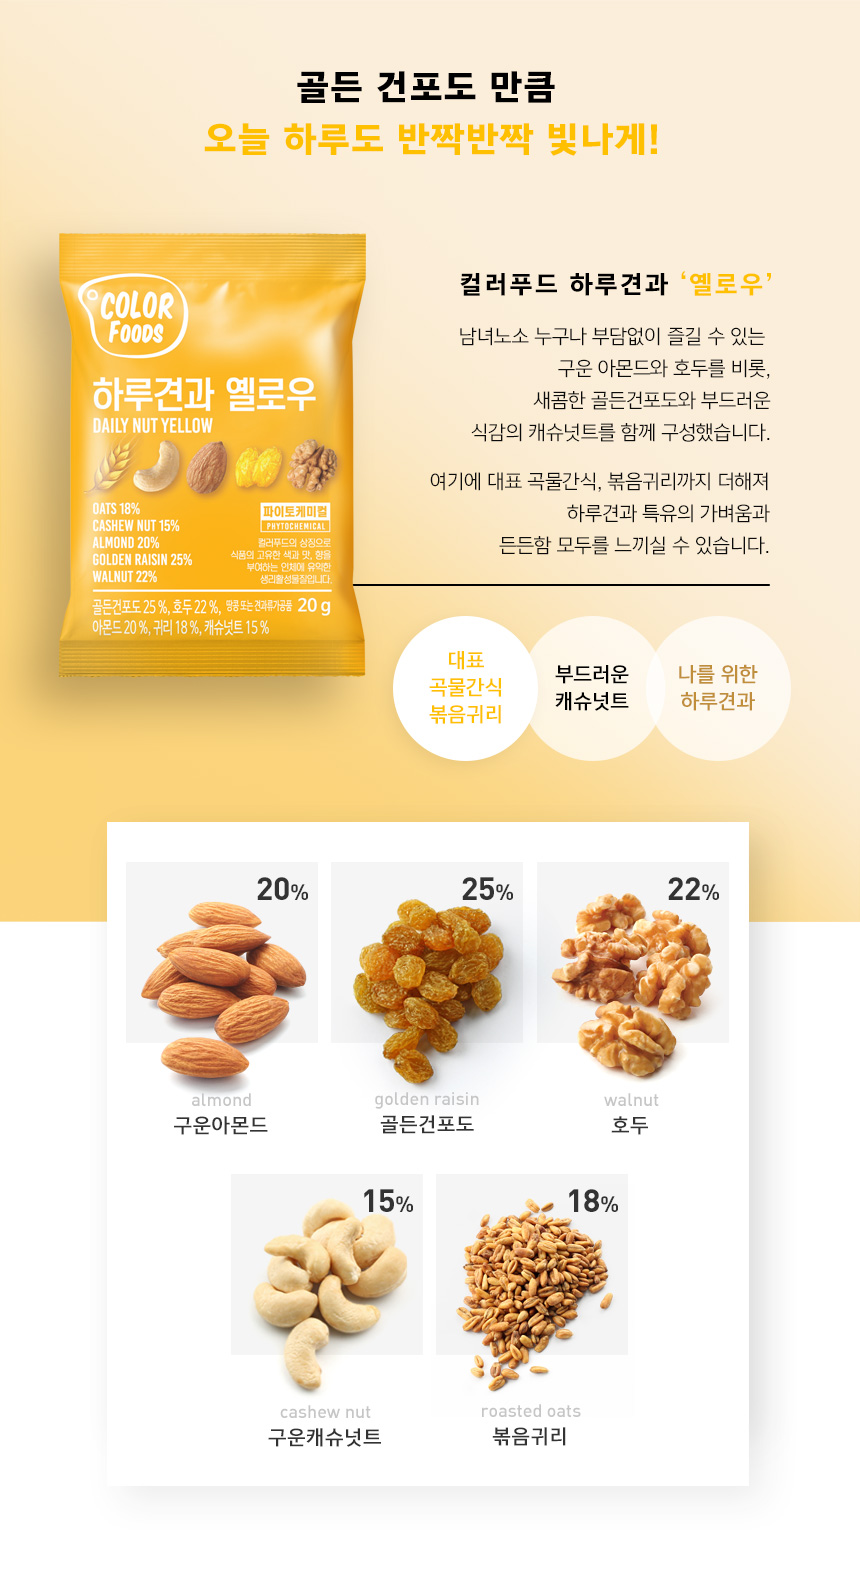 韓國食品-[Color Foods] Daily Nut [Yellow] 20g*10